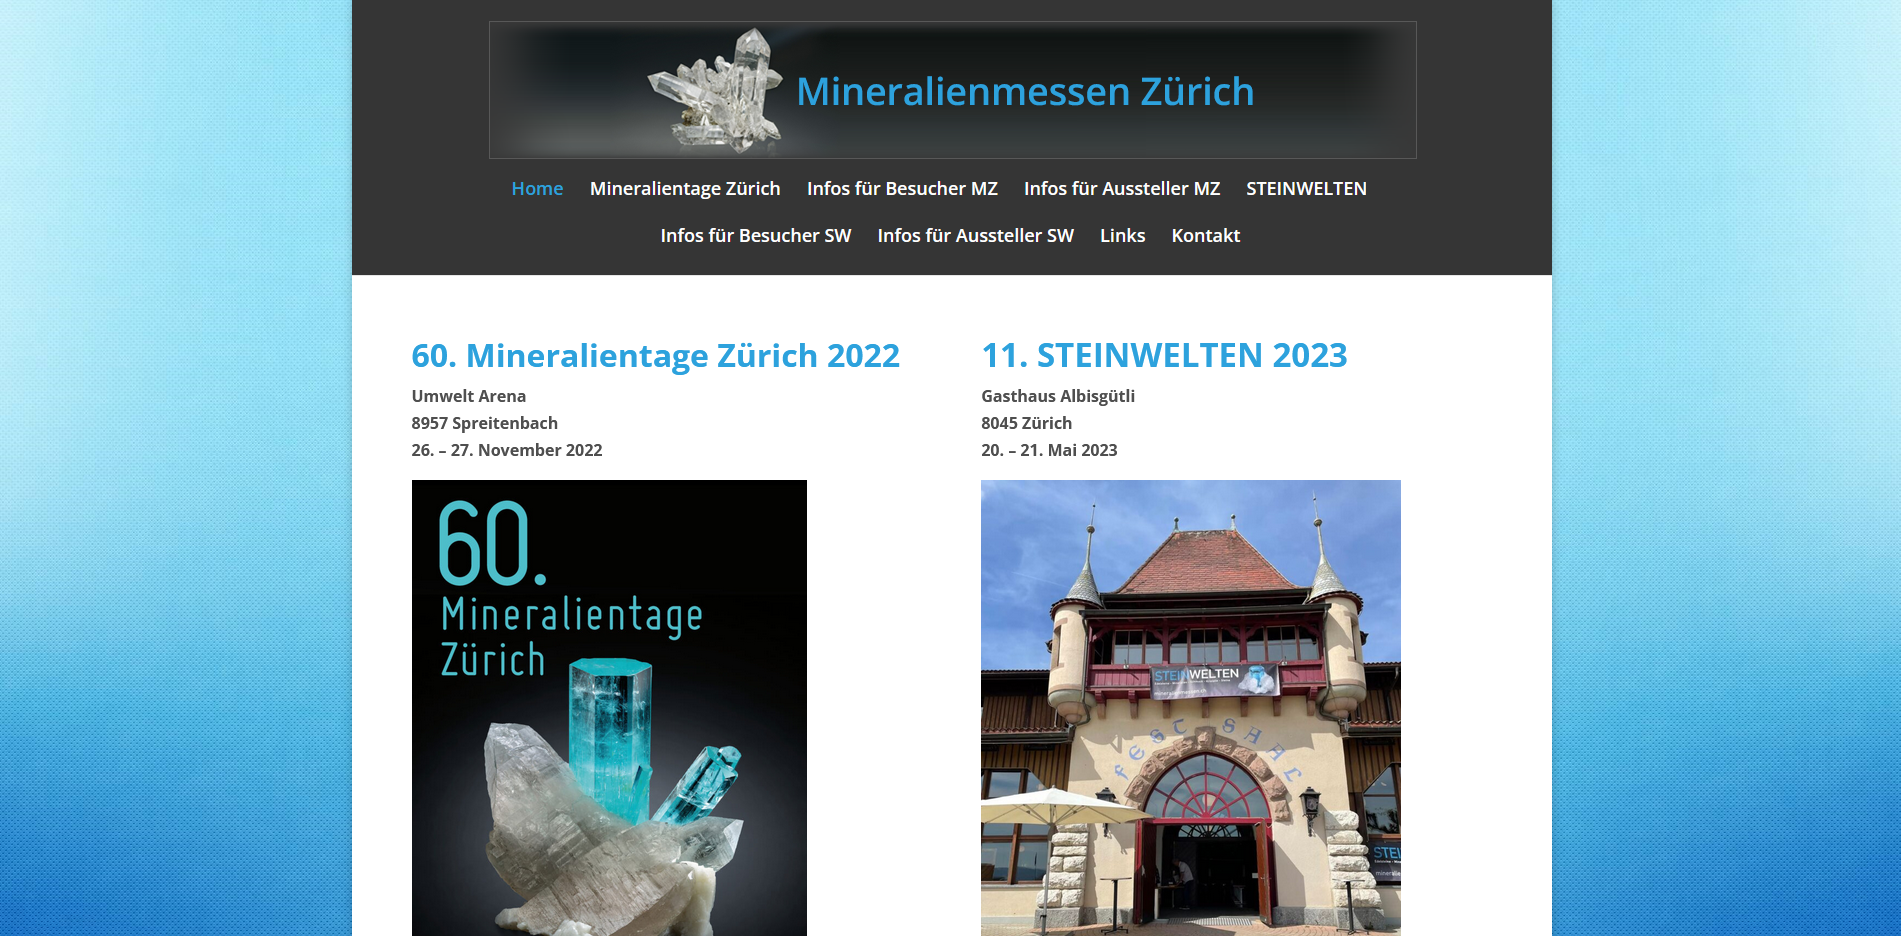 Mineralienmessen Zürich